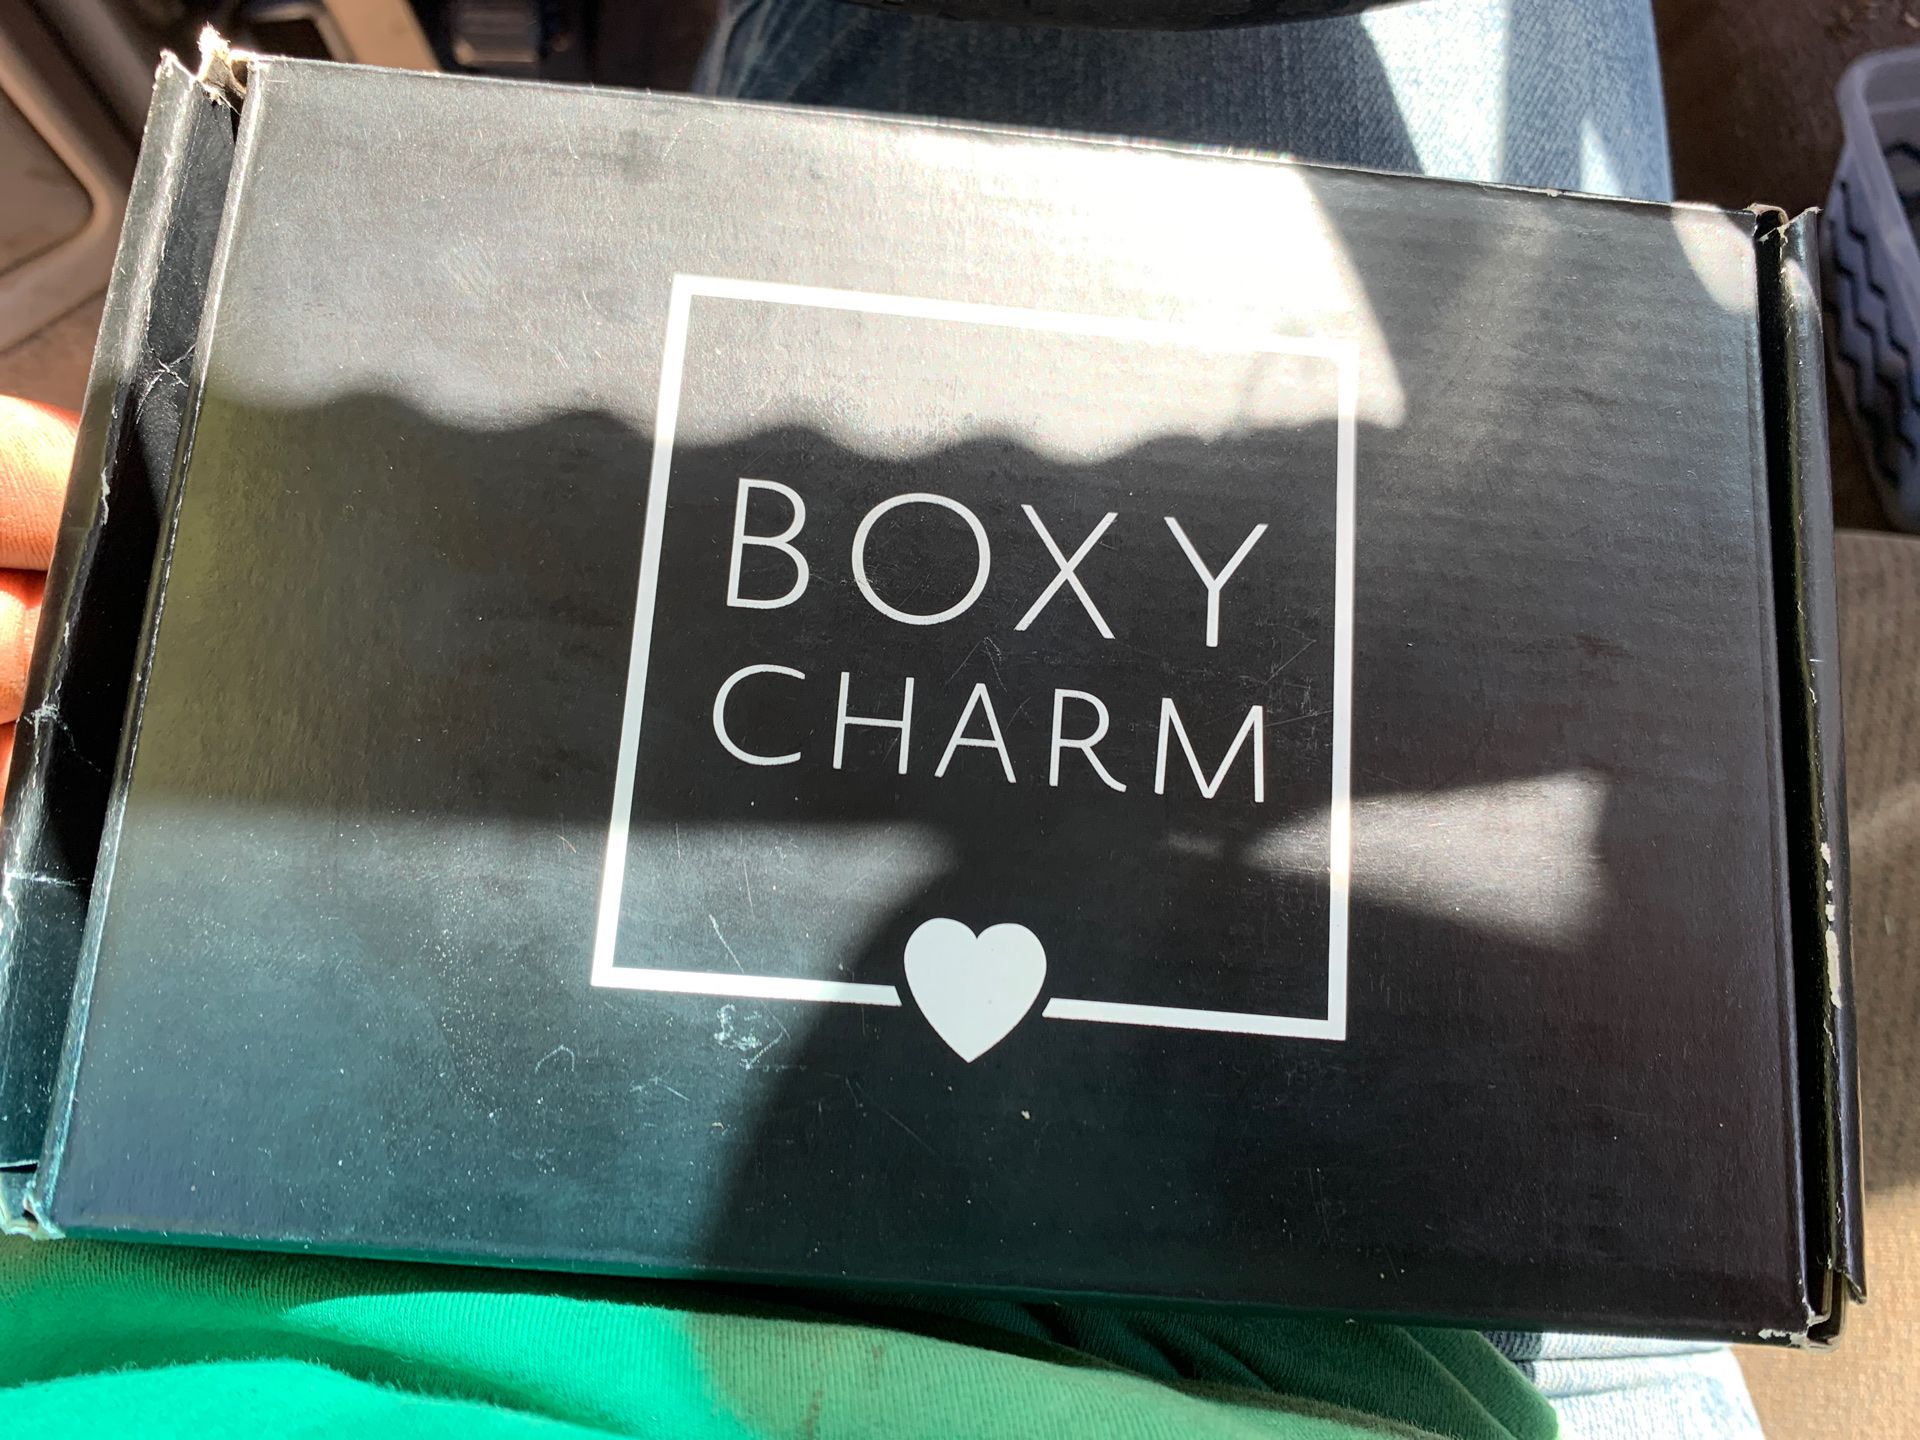 Boxy charm make up kit